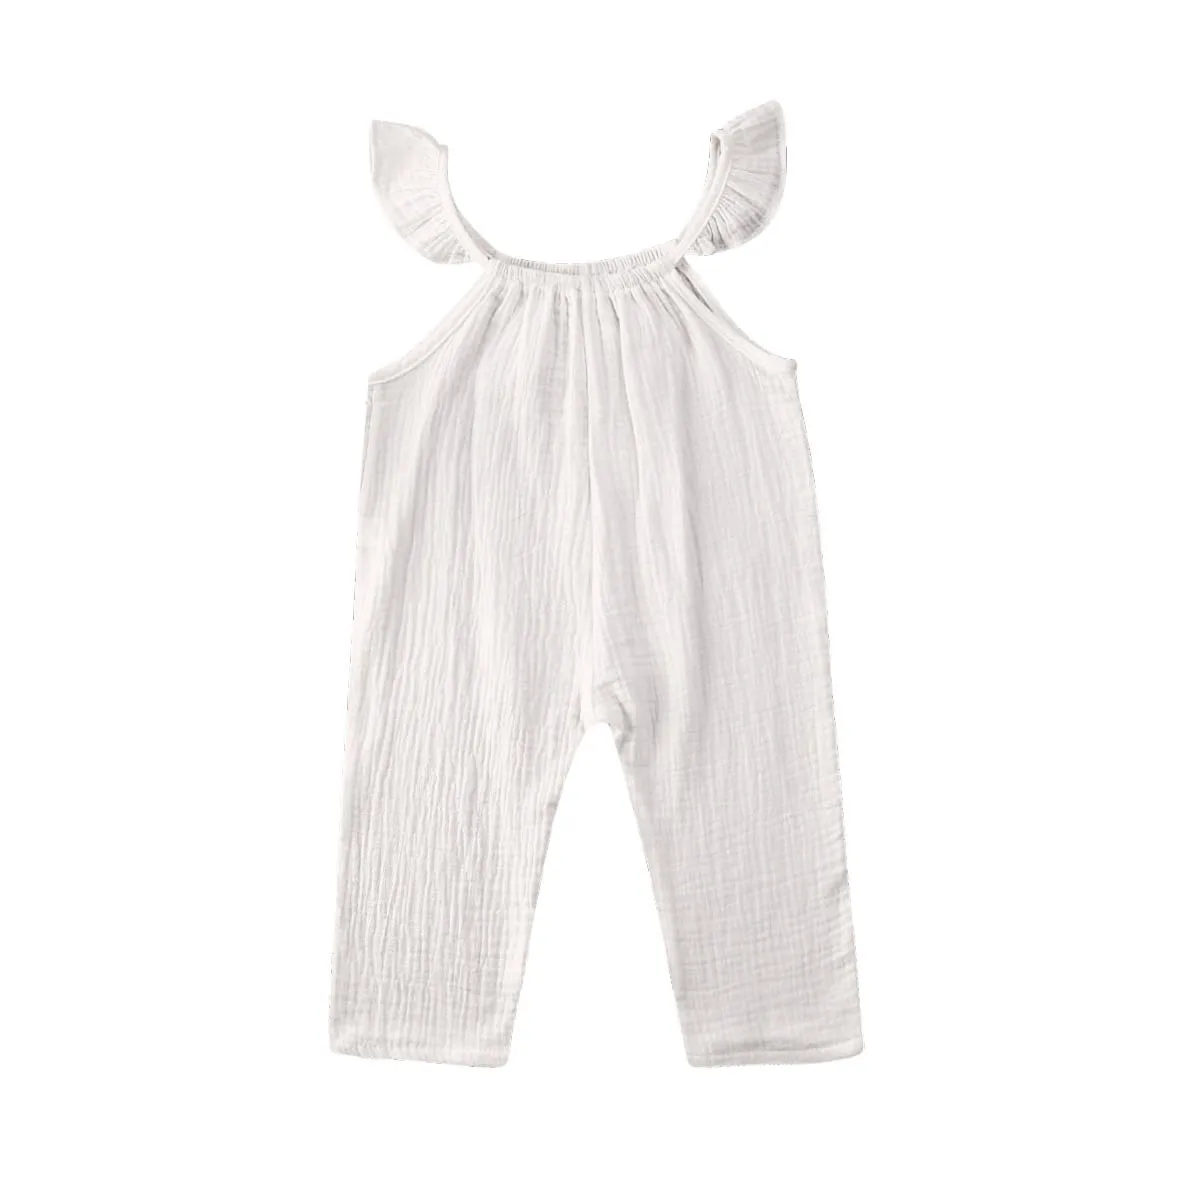 Милый детский комбинезон для маленьких мальчиков и девочек, однотонный комбинезон с оборками и короткими рукавами, хлопковый комплект одежды, От 0 до 3 лет - Цвет: Белый